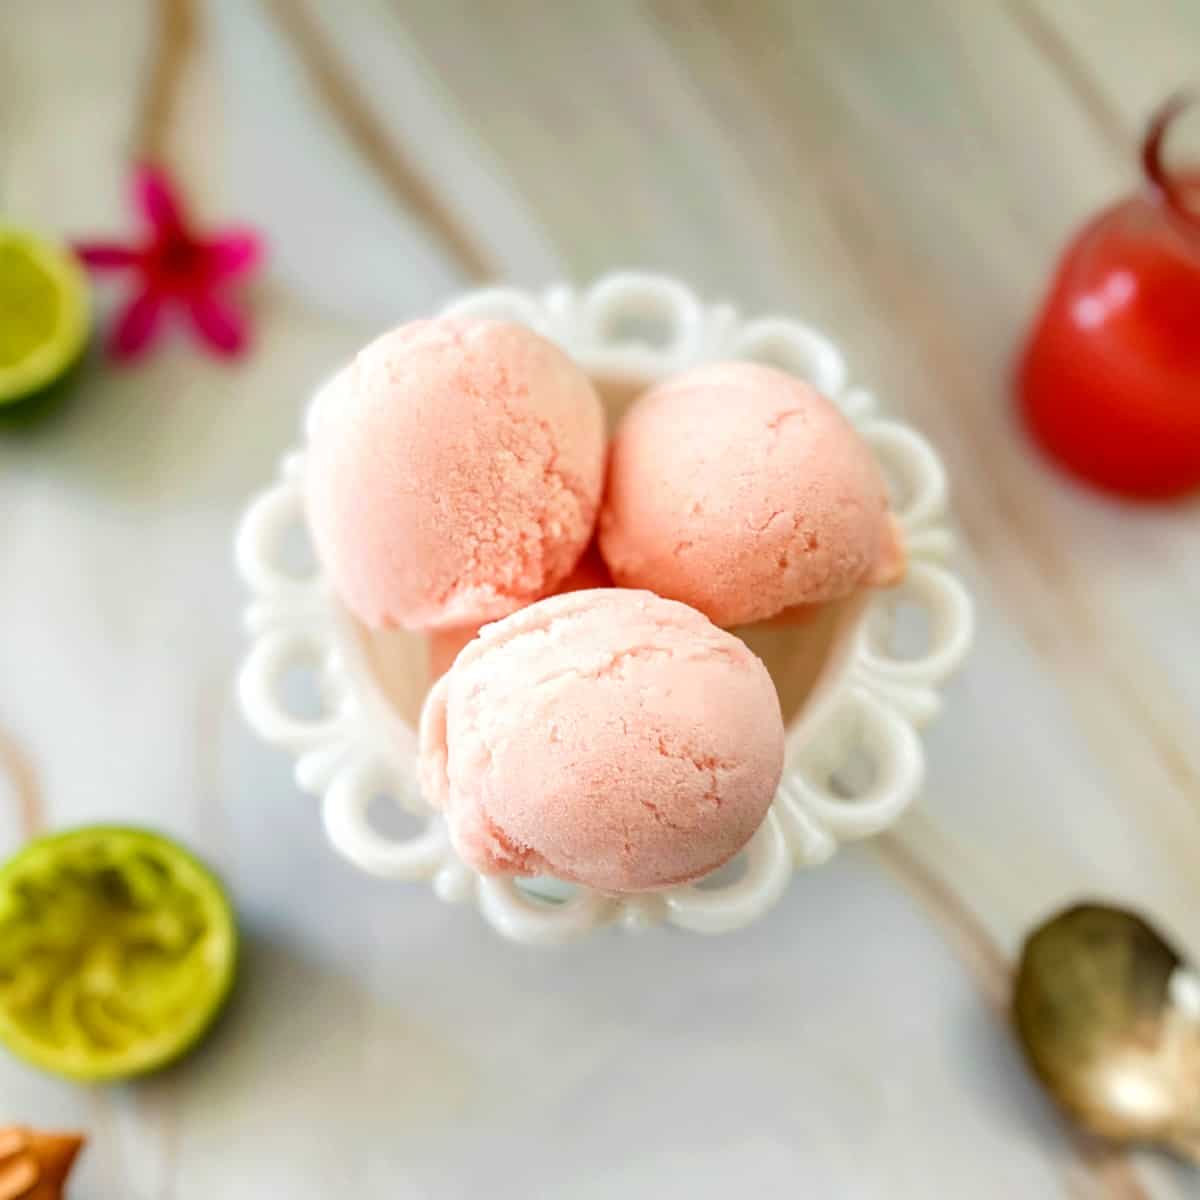 guava gelato in a bowl.